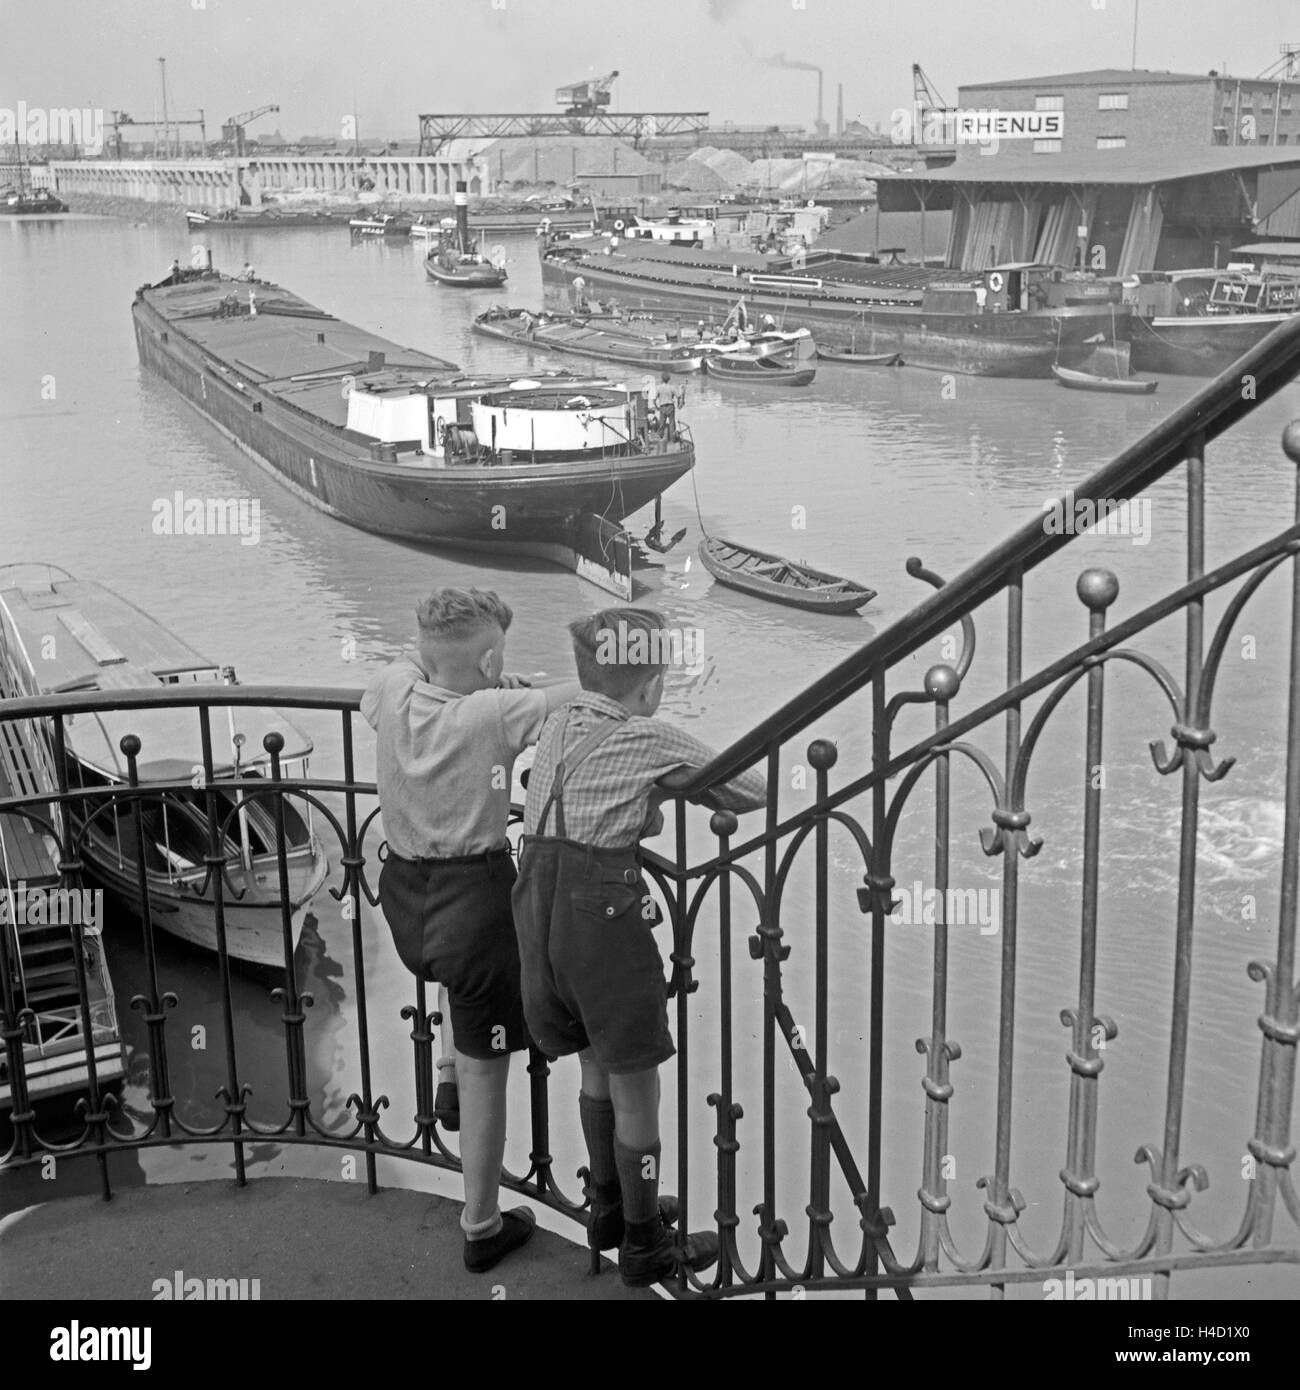 Zwei kleine Jungen schauen von einem Treppengeländer auf den Hafen von Dortmund, Deutschland 1930er Jahre. Two little boys watching Dortmund harbor from a banister rail, Germany 1930s. Stock Photo